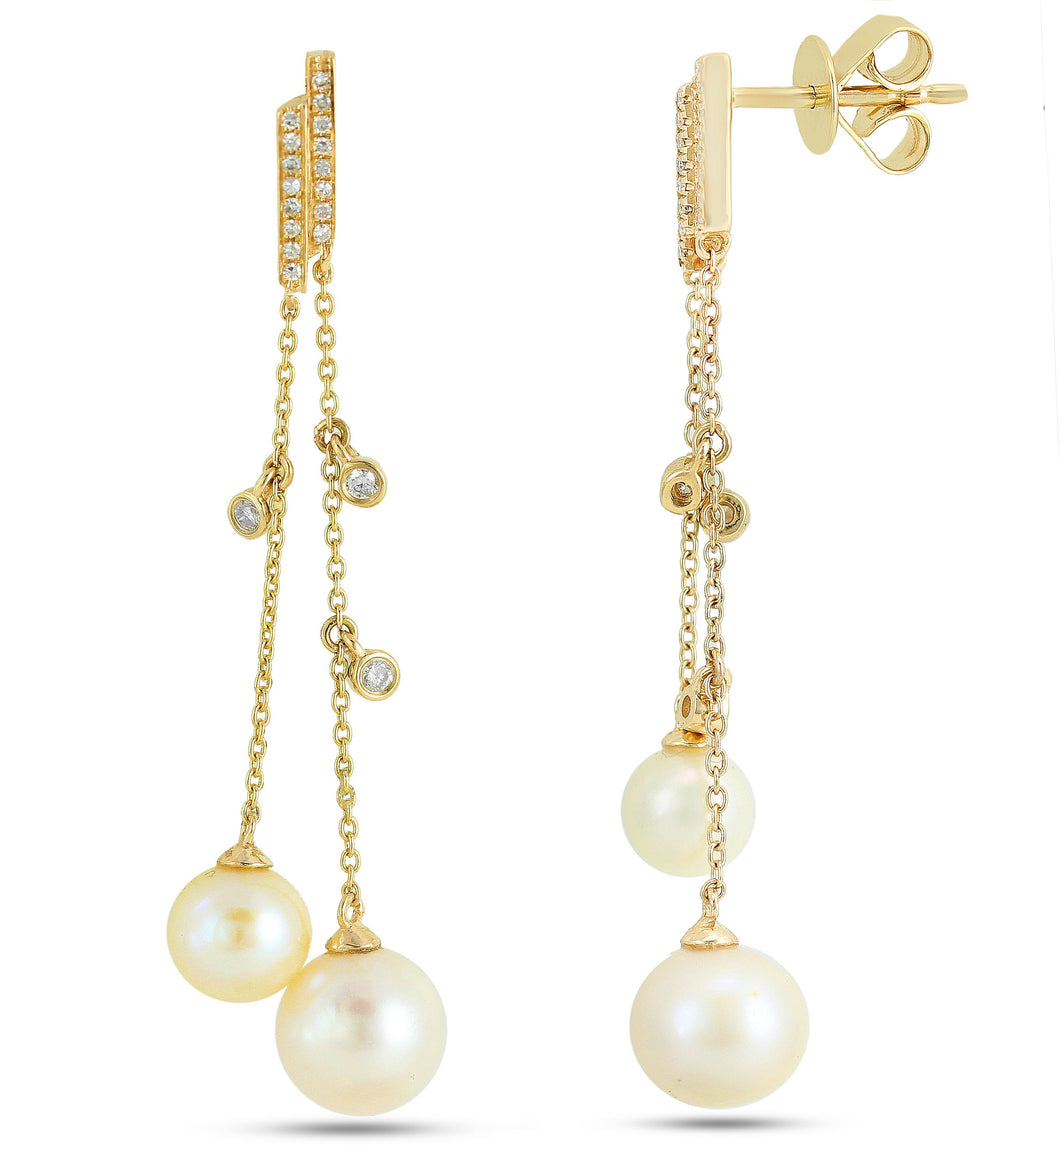 18K Gold Earring,diamond earring,18k diamond earring,white Diamond earring,18k gold jewellery,gold earring,18k earring,pearl earring